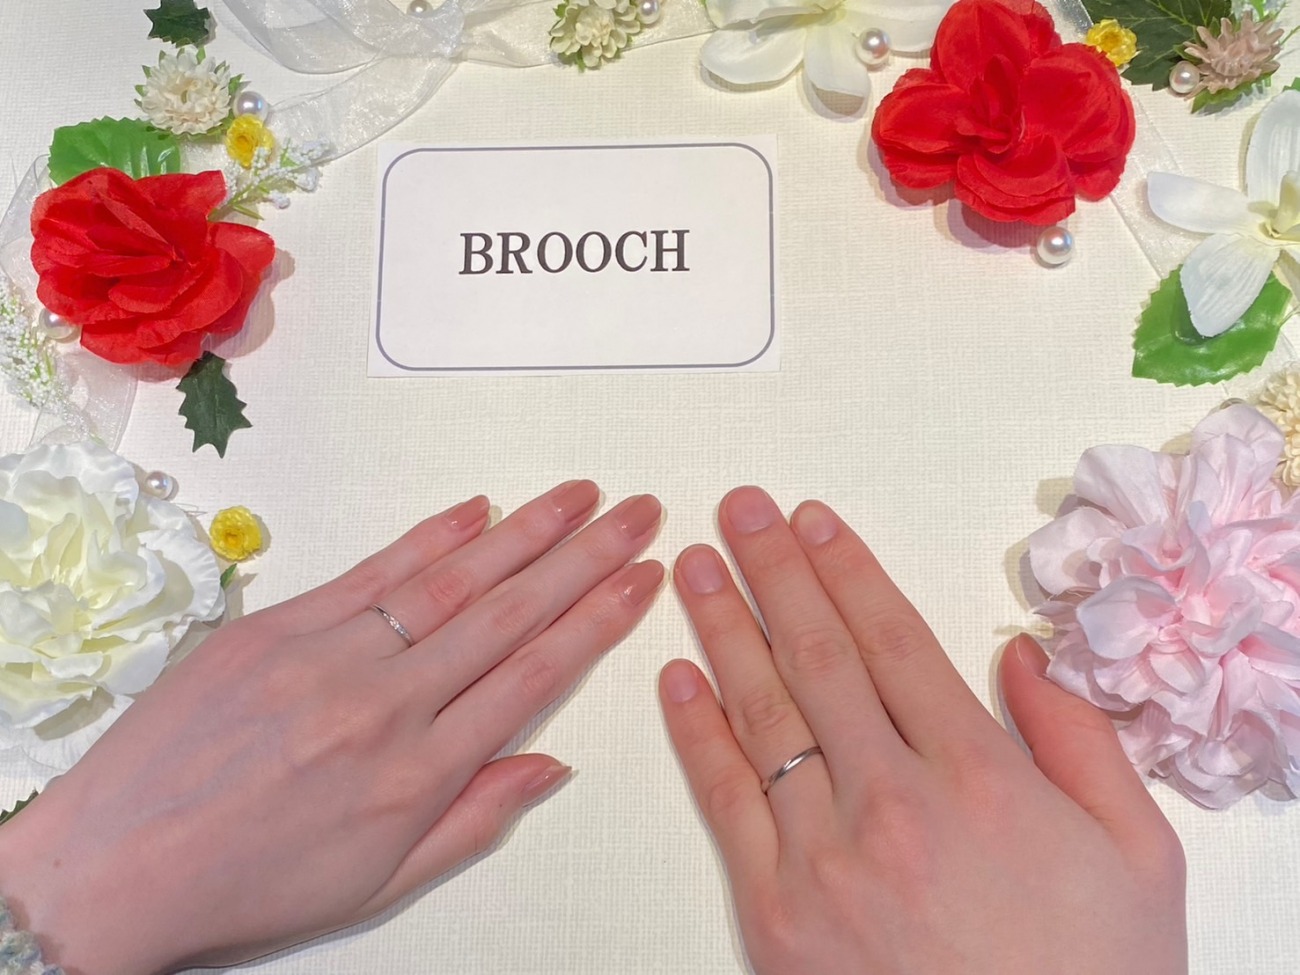 お指の細い奥様にお似合いのウエーブデザインがかわいい！ルシエの結婚指輪